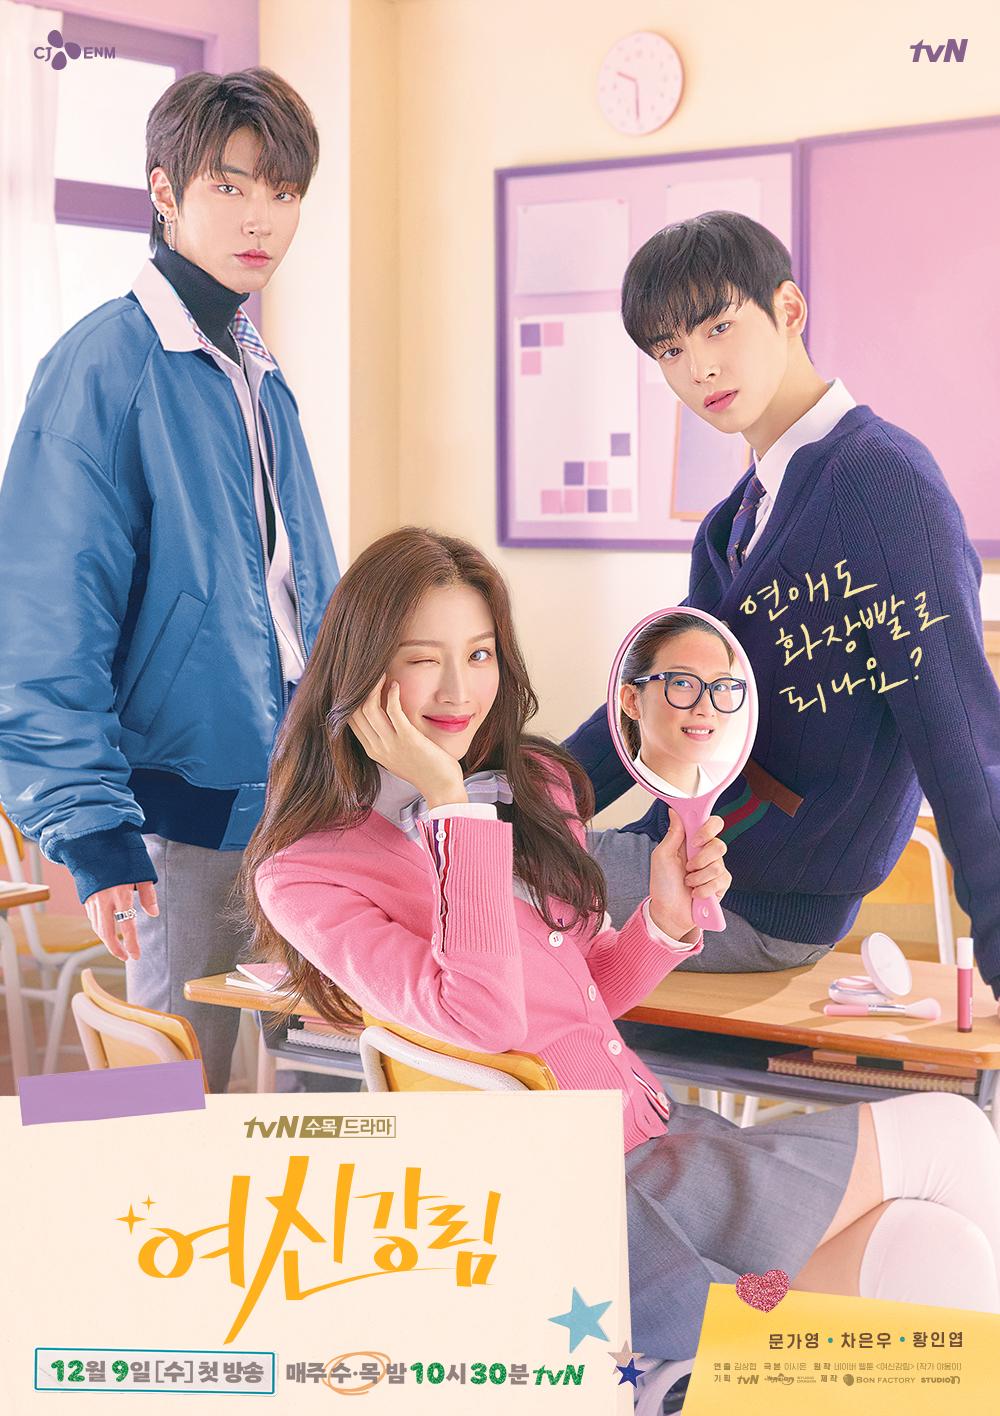 11 Drama Korea cinta segitiga, kisahnya tak kalah dari Layangan Putus